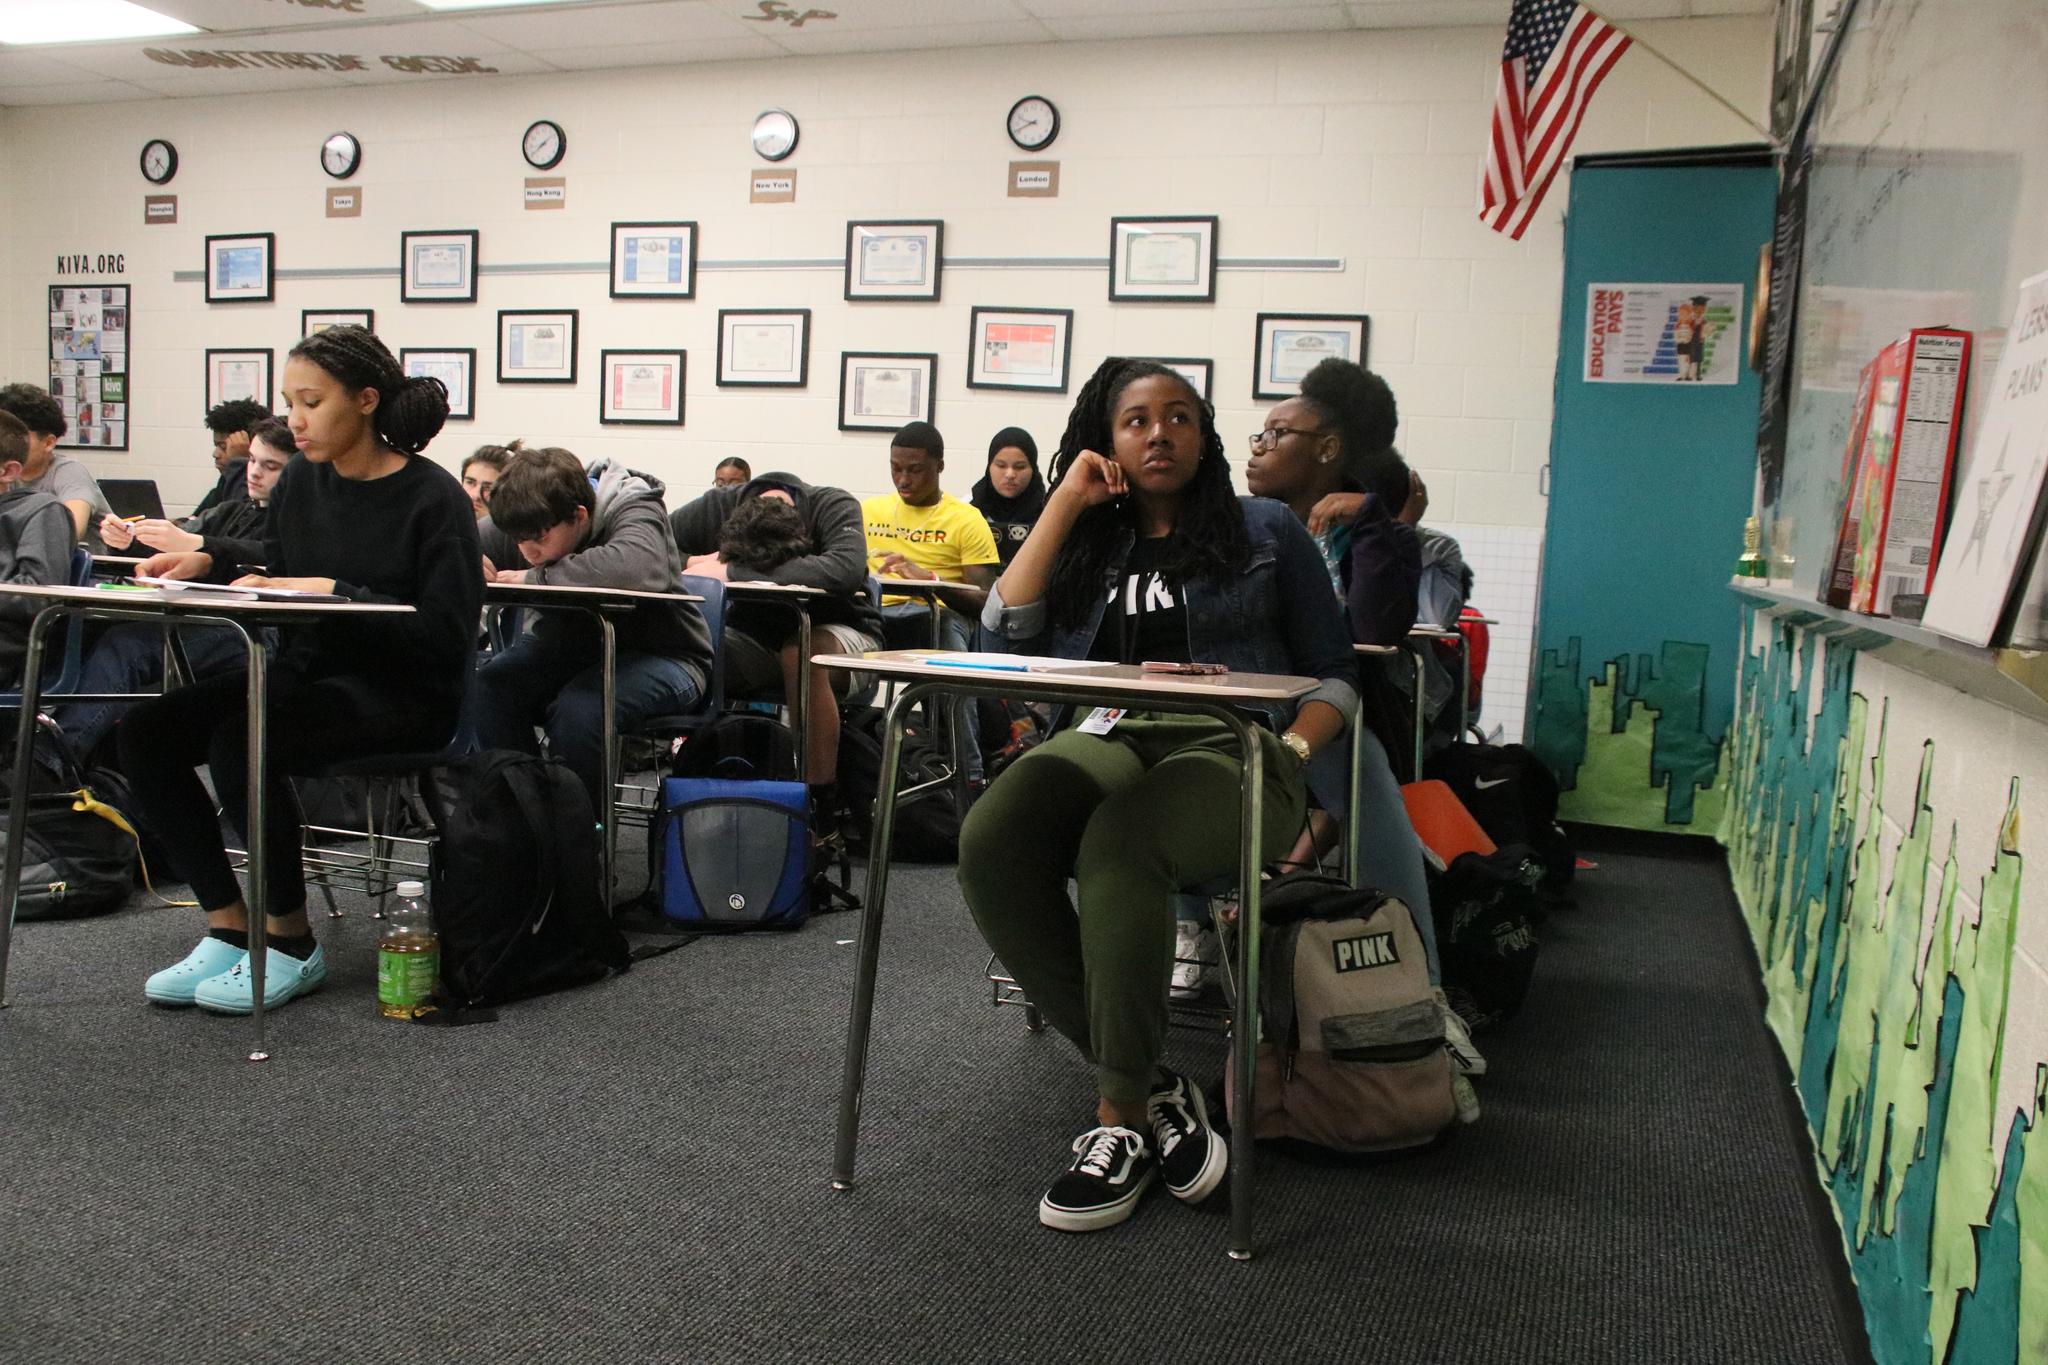 Lærermangelen rammer hardest på skoler der det er få ressurser fra før. Ved Ridgeview High, som Aftenposten besøkte nylig, er 62 prosent av elevene under fattigdomsgrensen.